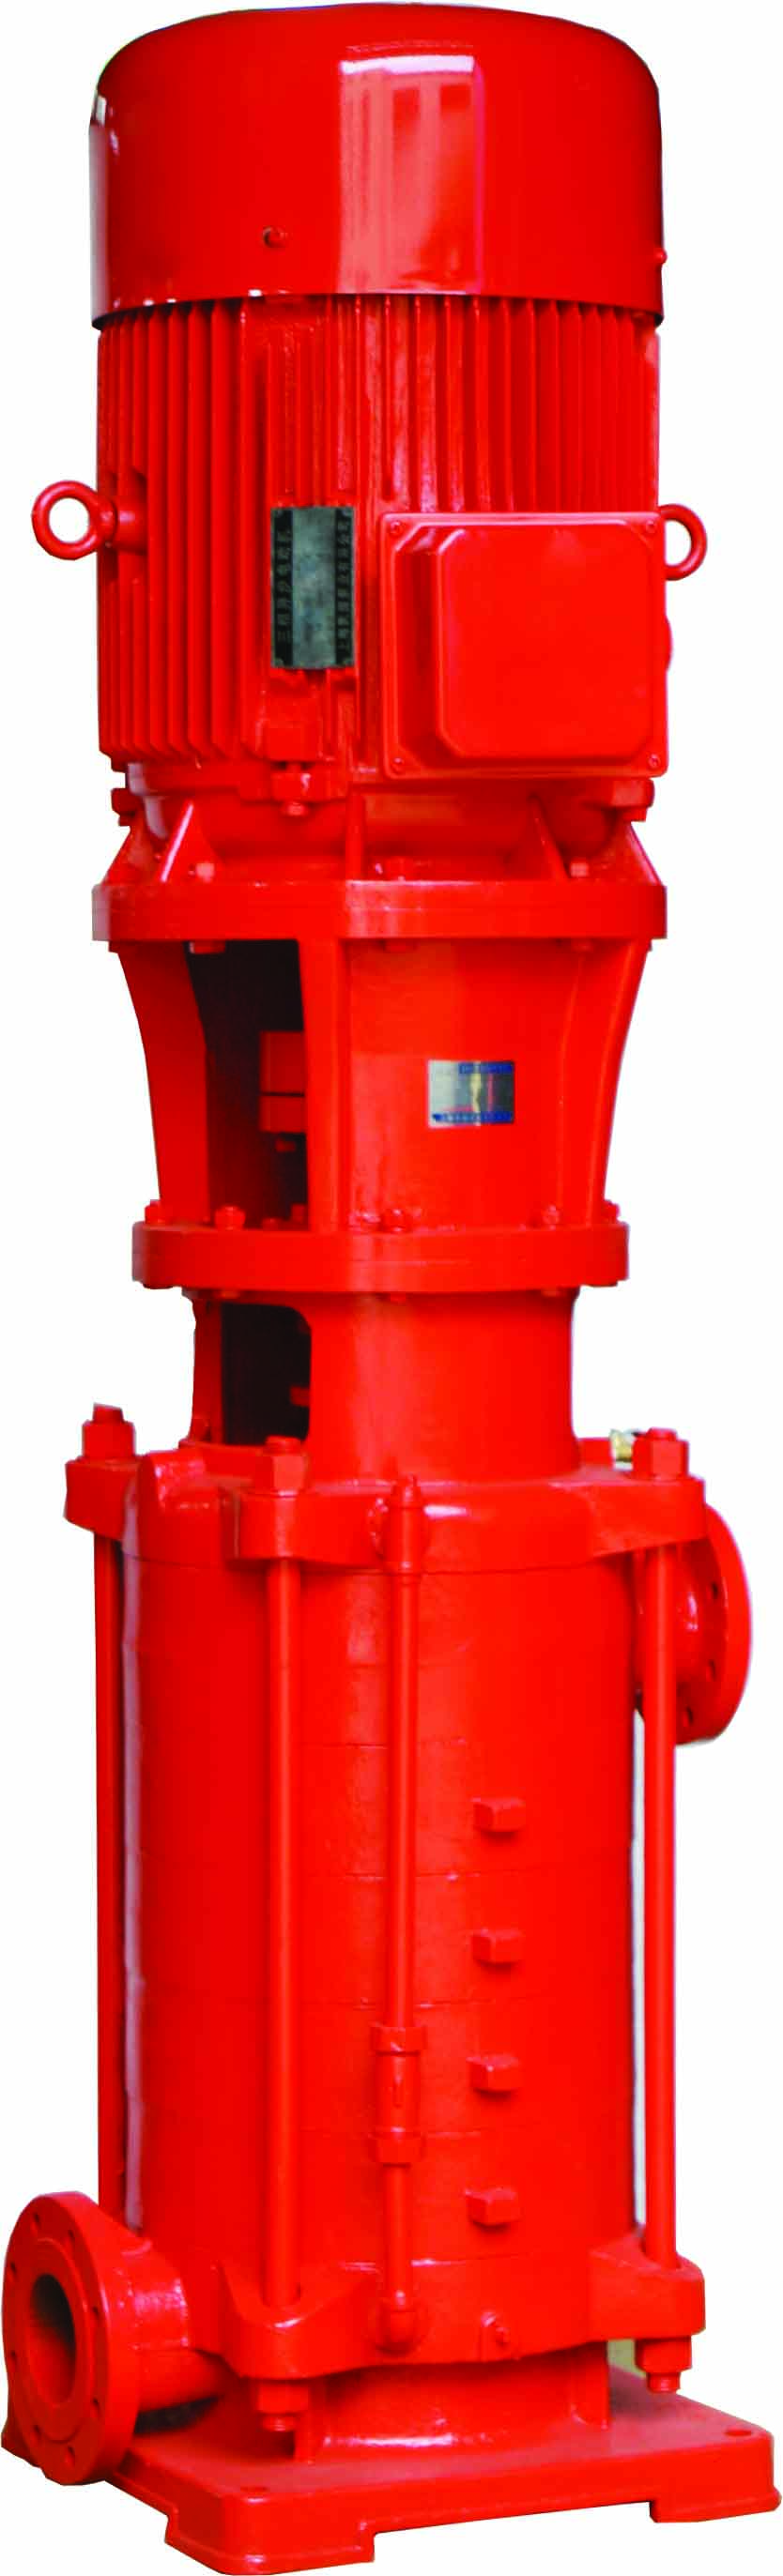 Pompe à incendie centrifuge multicellulaire à aspiration unique verticale XBD-DL dans les systèmes de lutte contre l'incendie